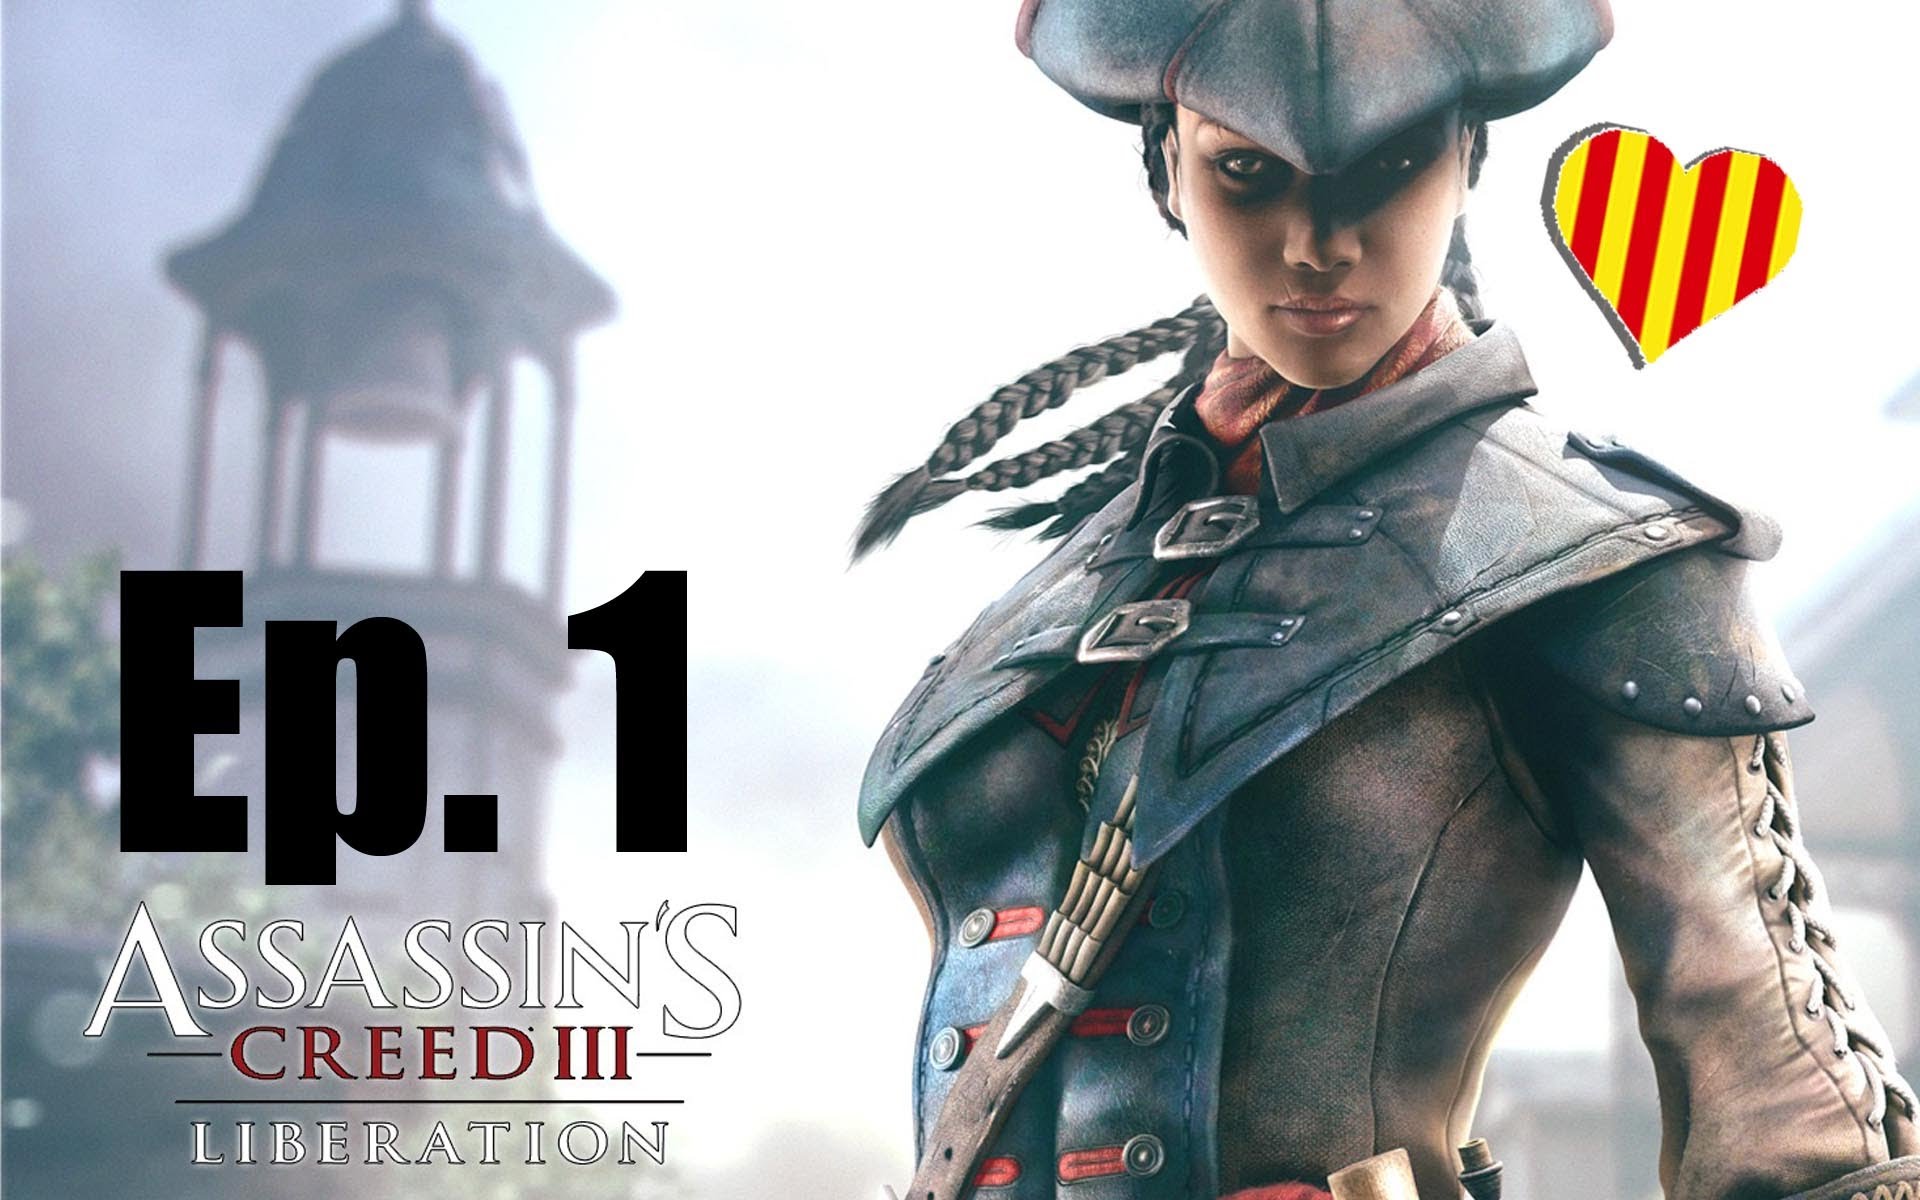 Assassin's Creed III Liberation Gameplay Ep.1 Racisme per tot arreu de BorrellIV